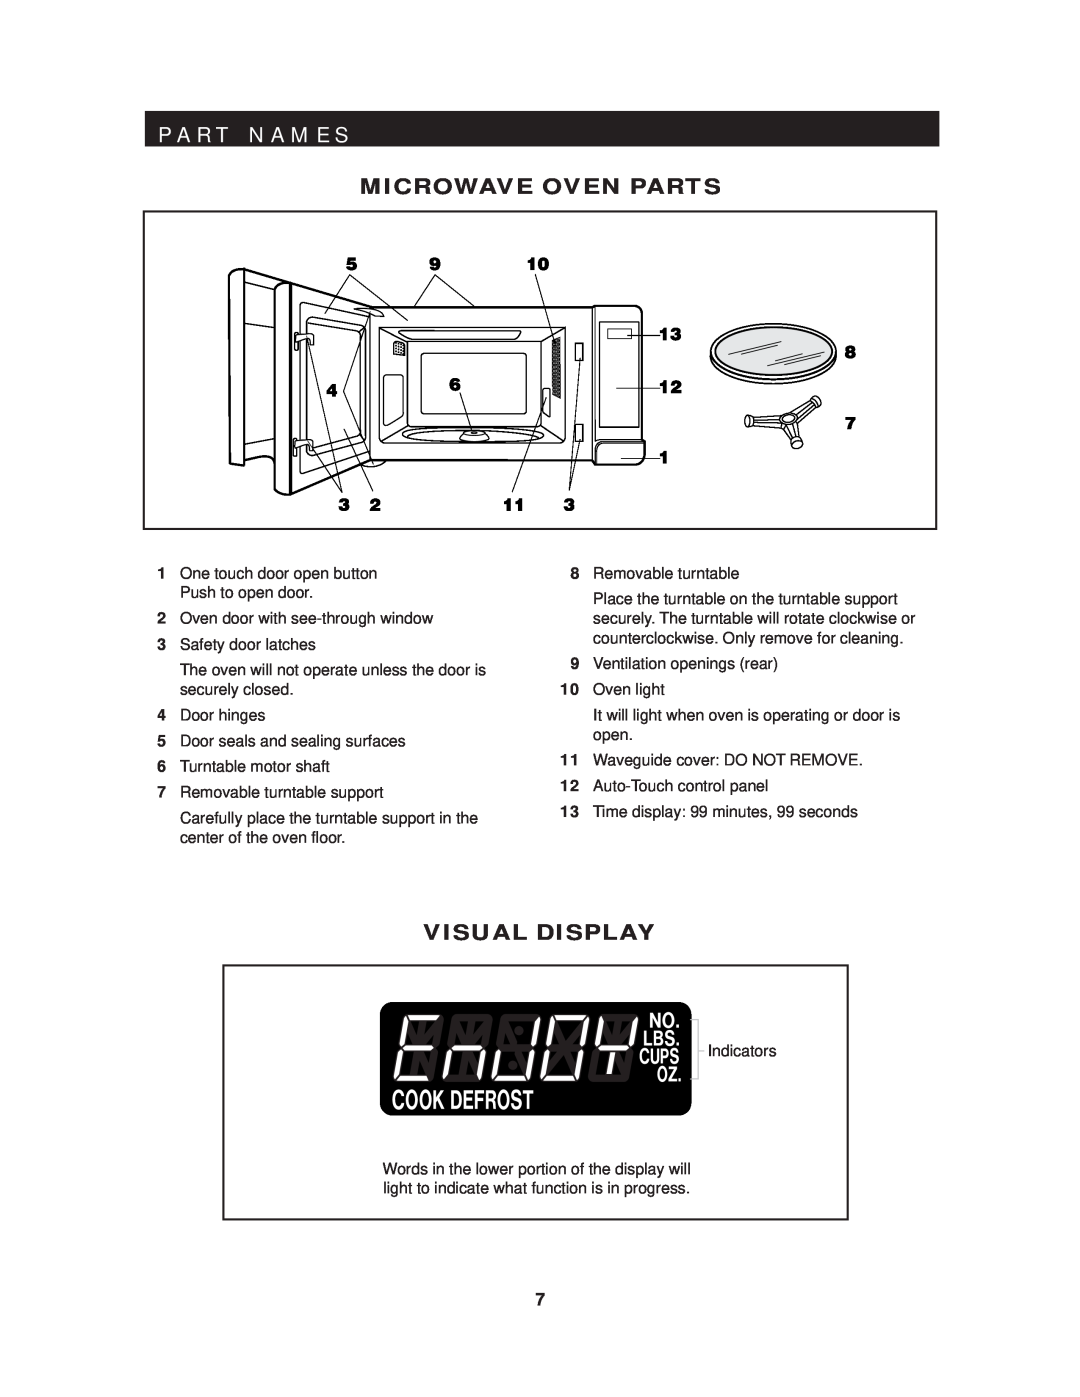 Sharp R-409HK warranty P A R T N A M E S, Microwave Oven Parts, Visual Display 